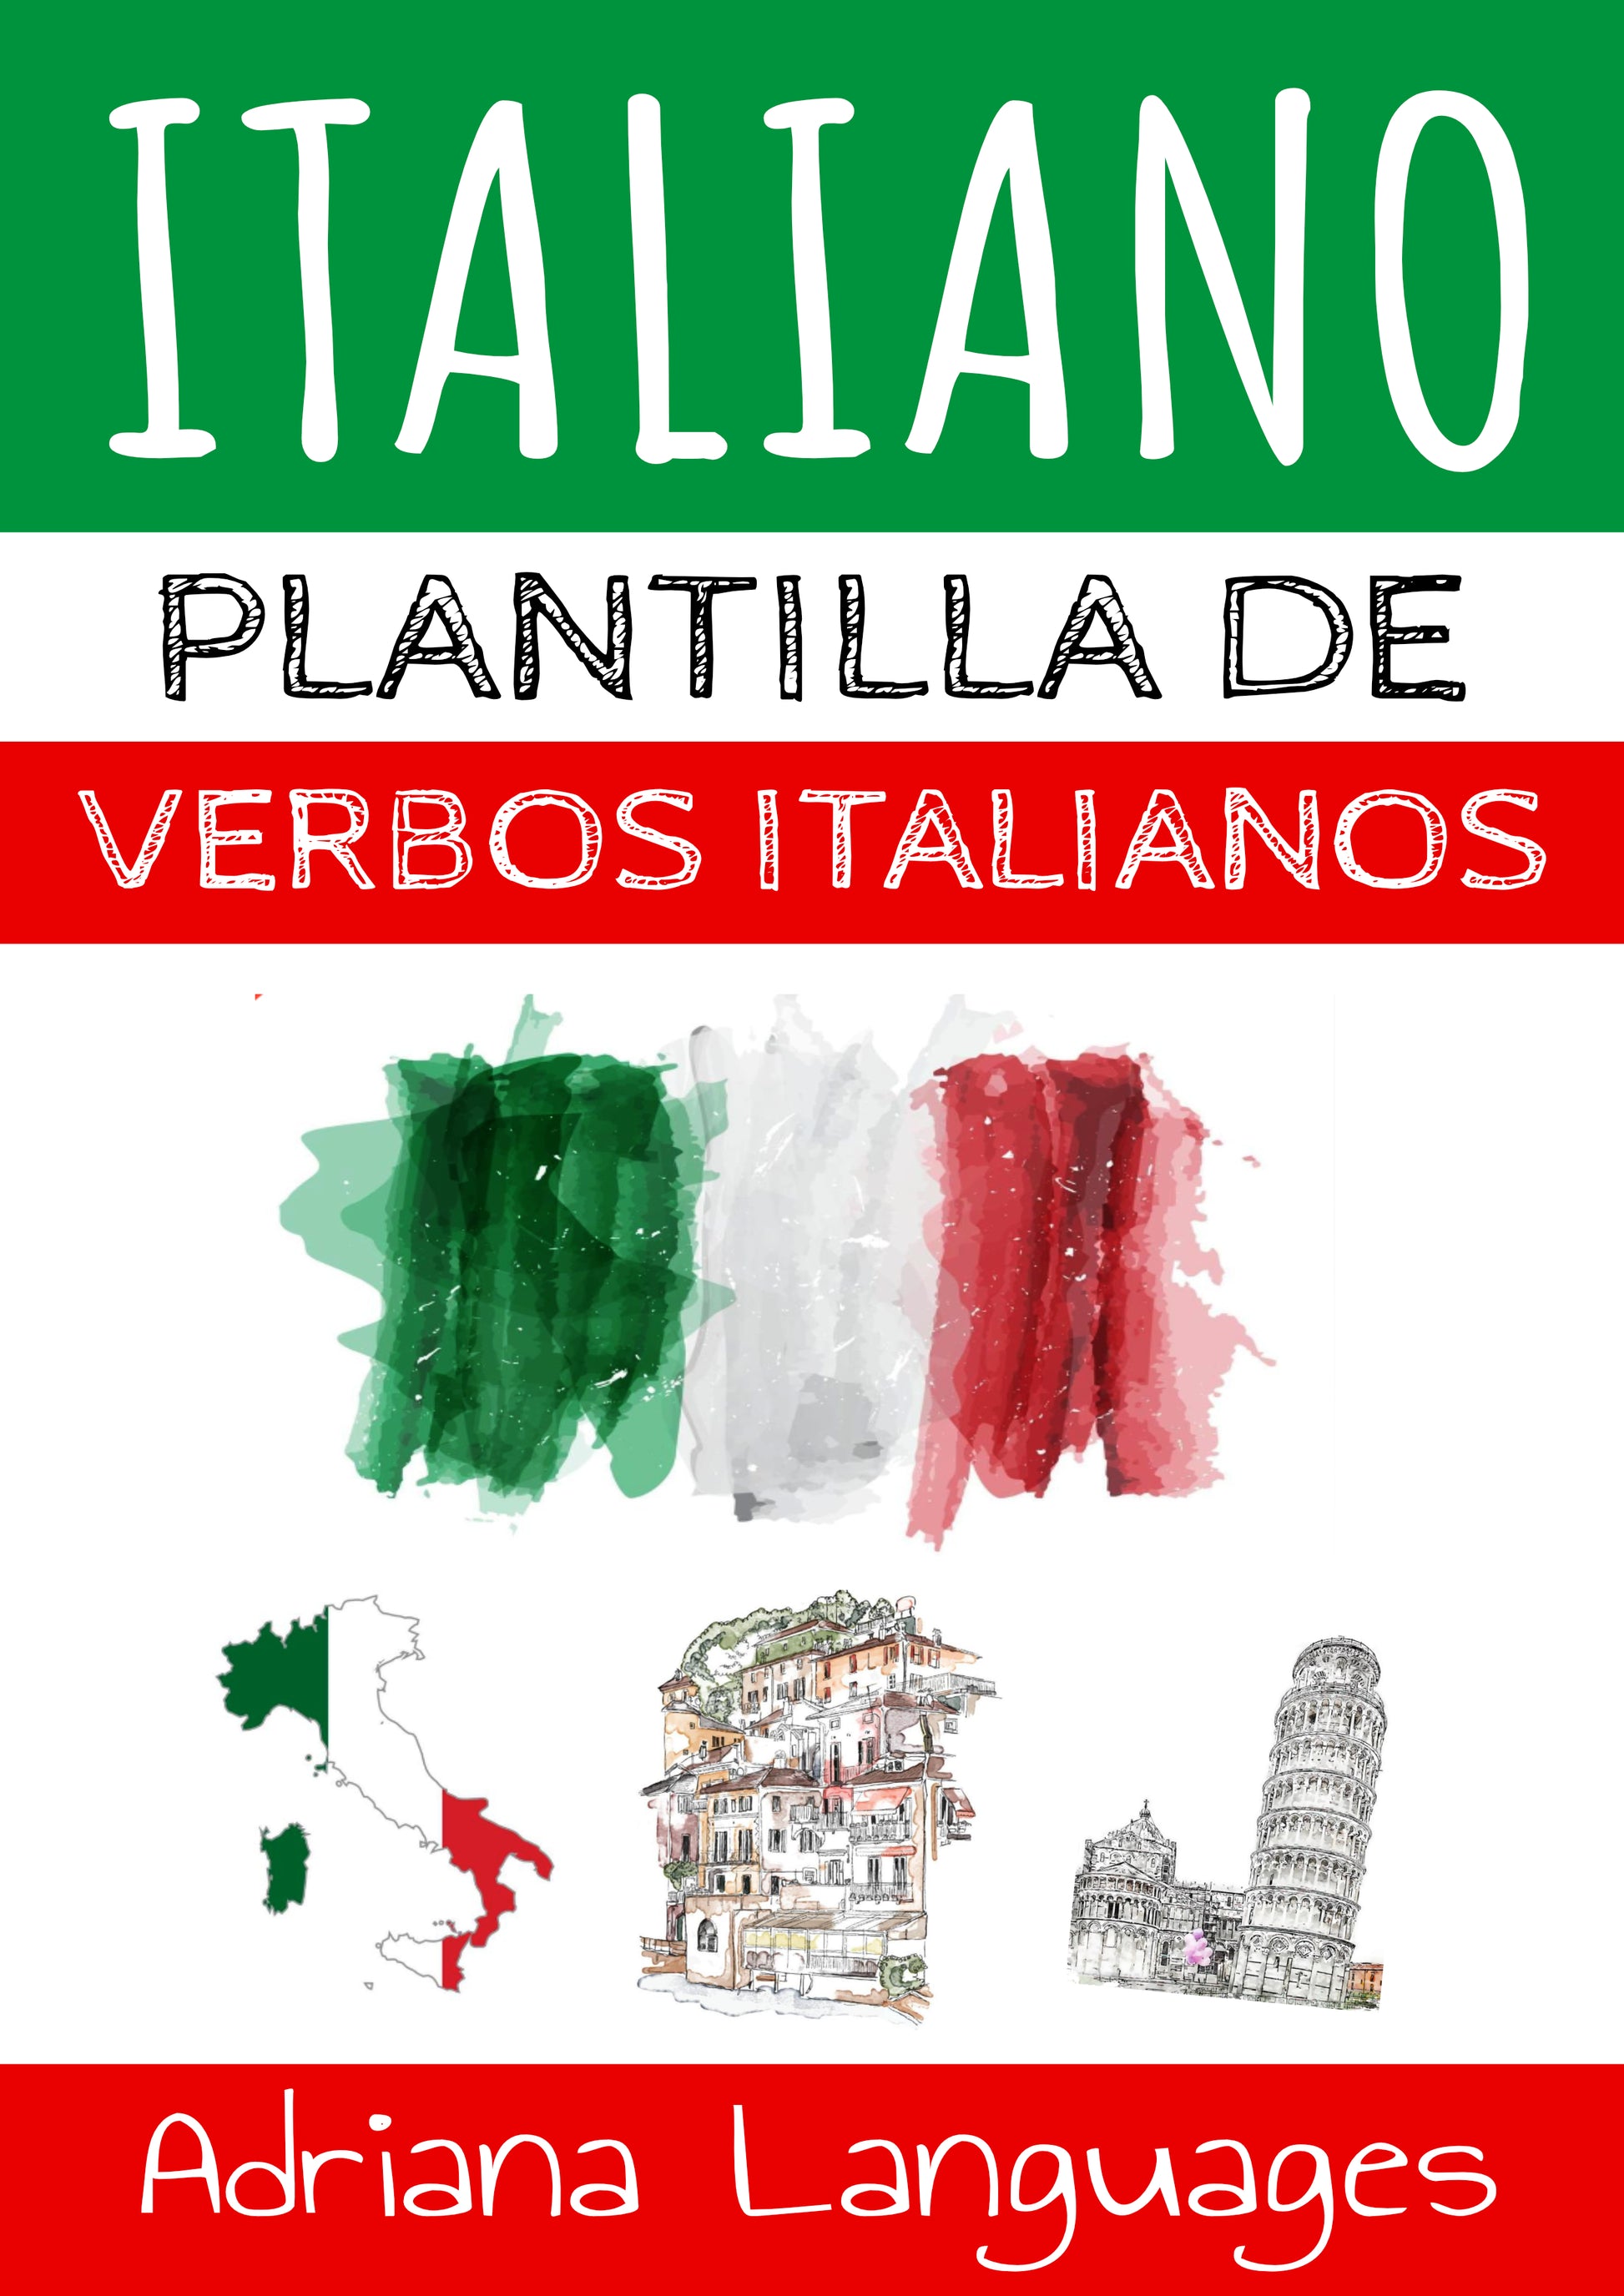 Plantilla para conjugar verbos en italiano Adriana Languages - Adriana Languages